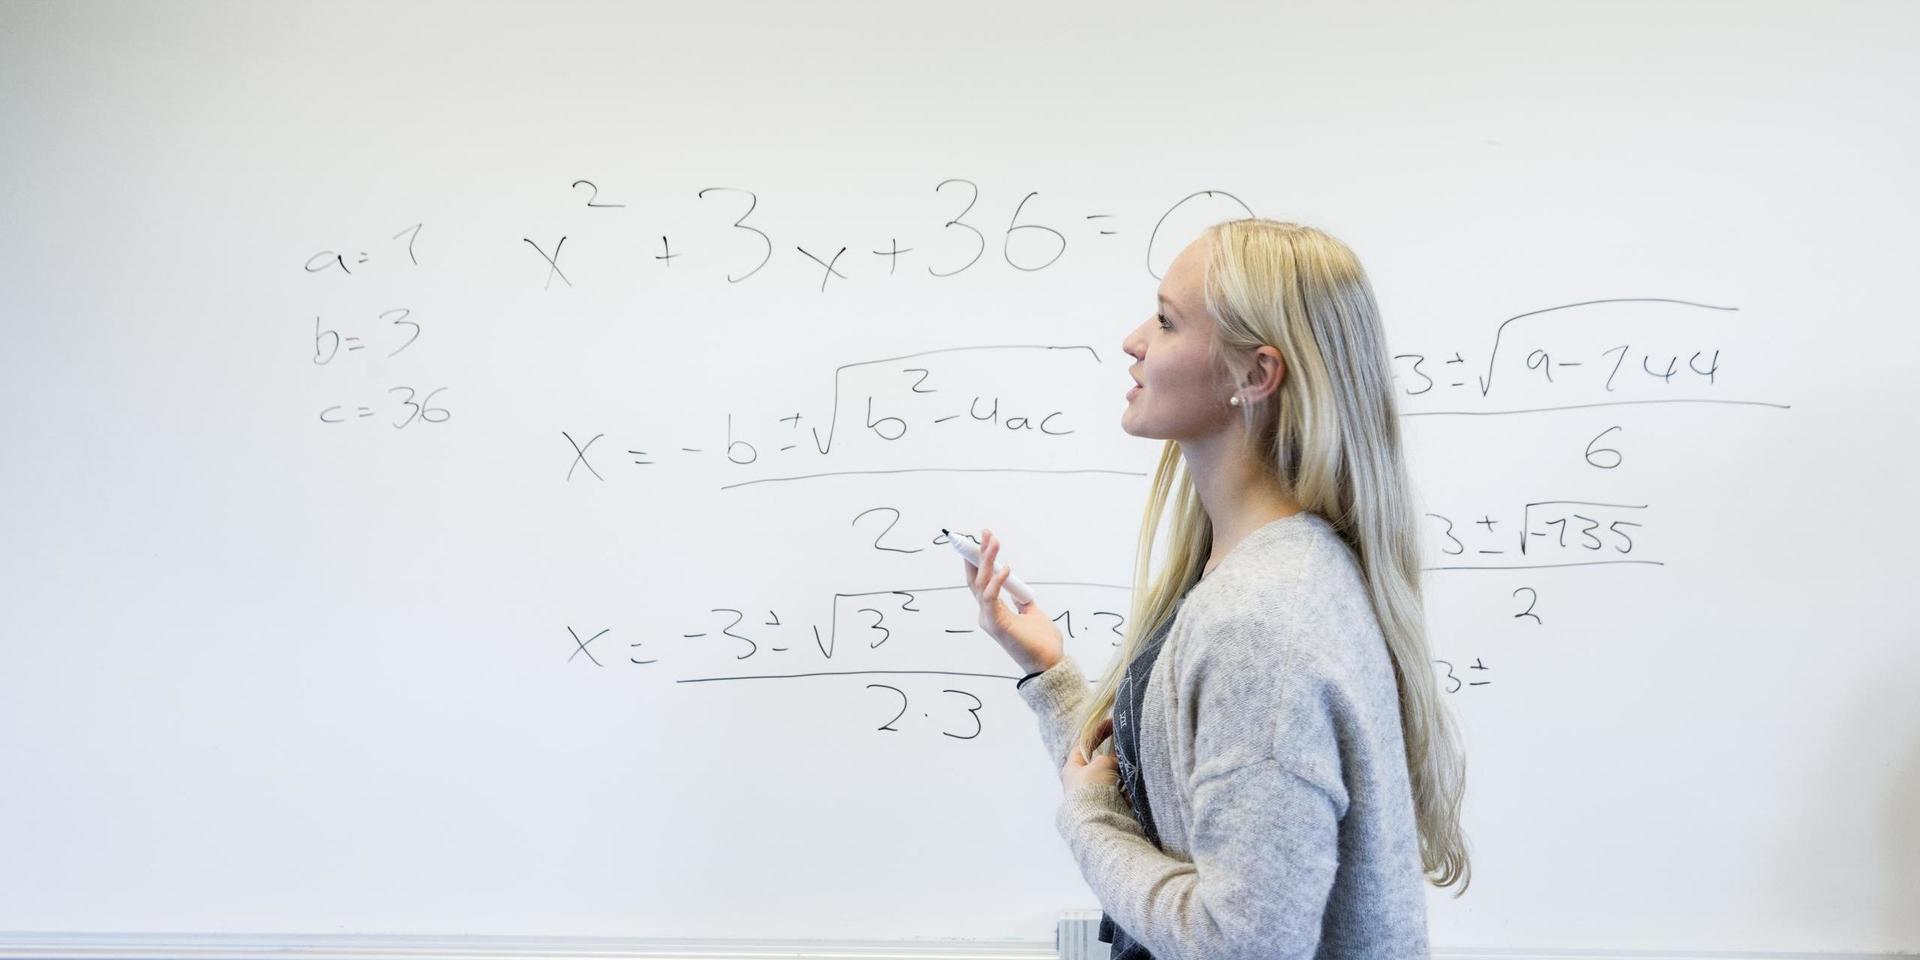 Sveriges lärare behöver inte detaljstyras av arbetsgivaren. Ett faktum som borde vara lika lätt att inse som att lösa den här andragradsekvationen. 